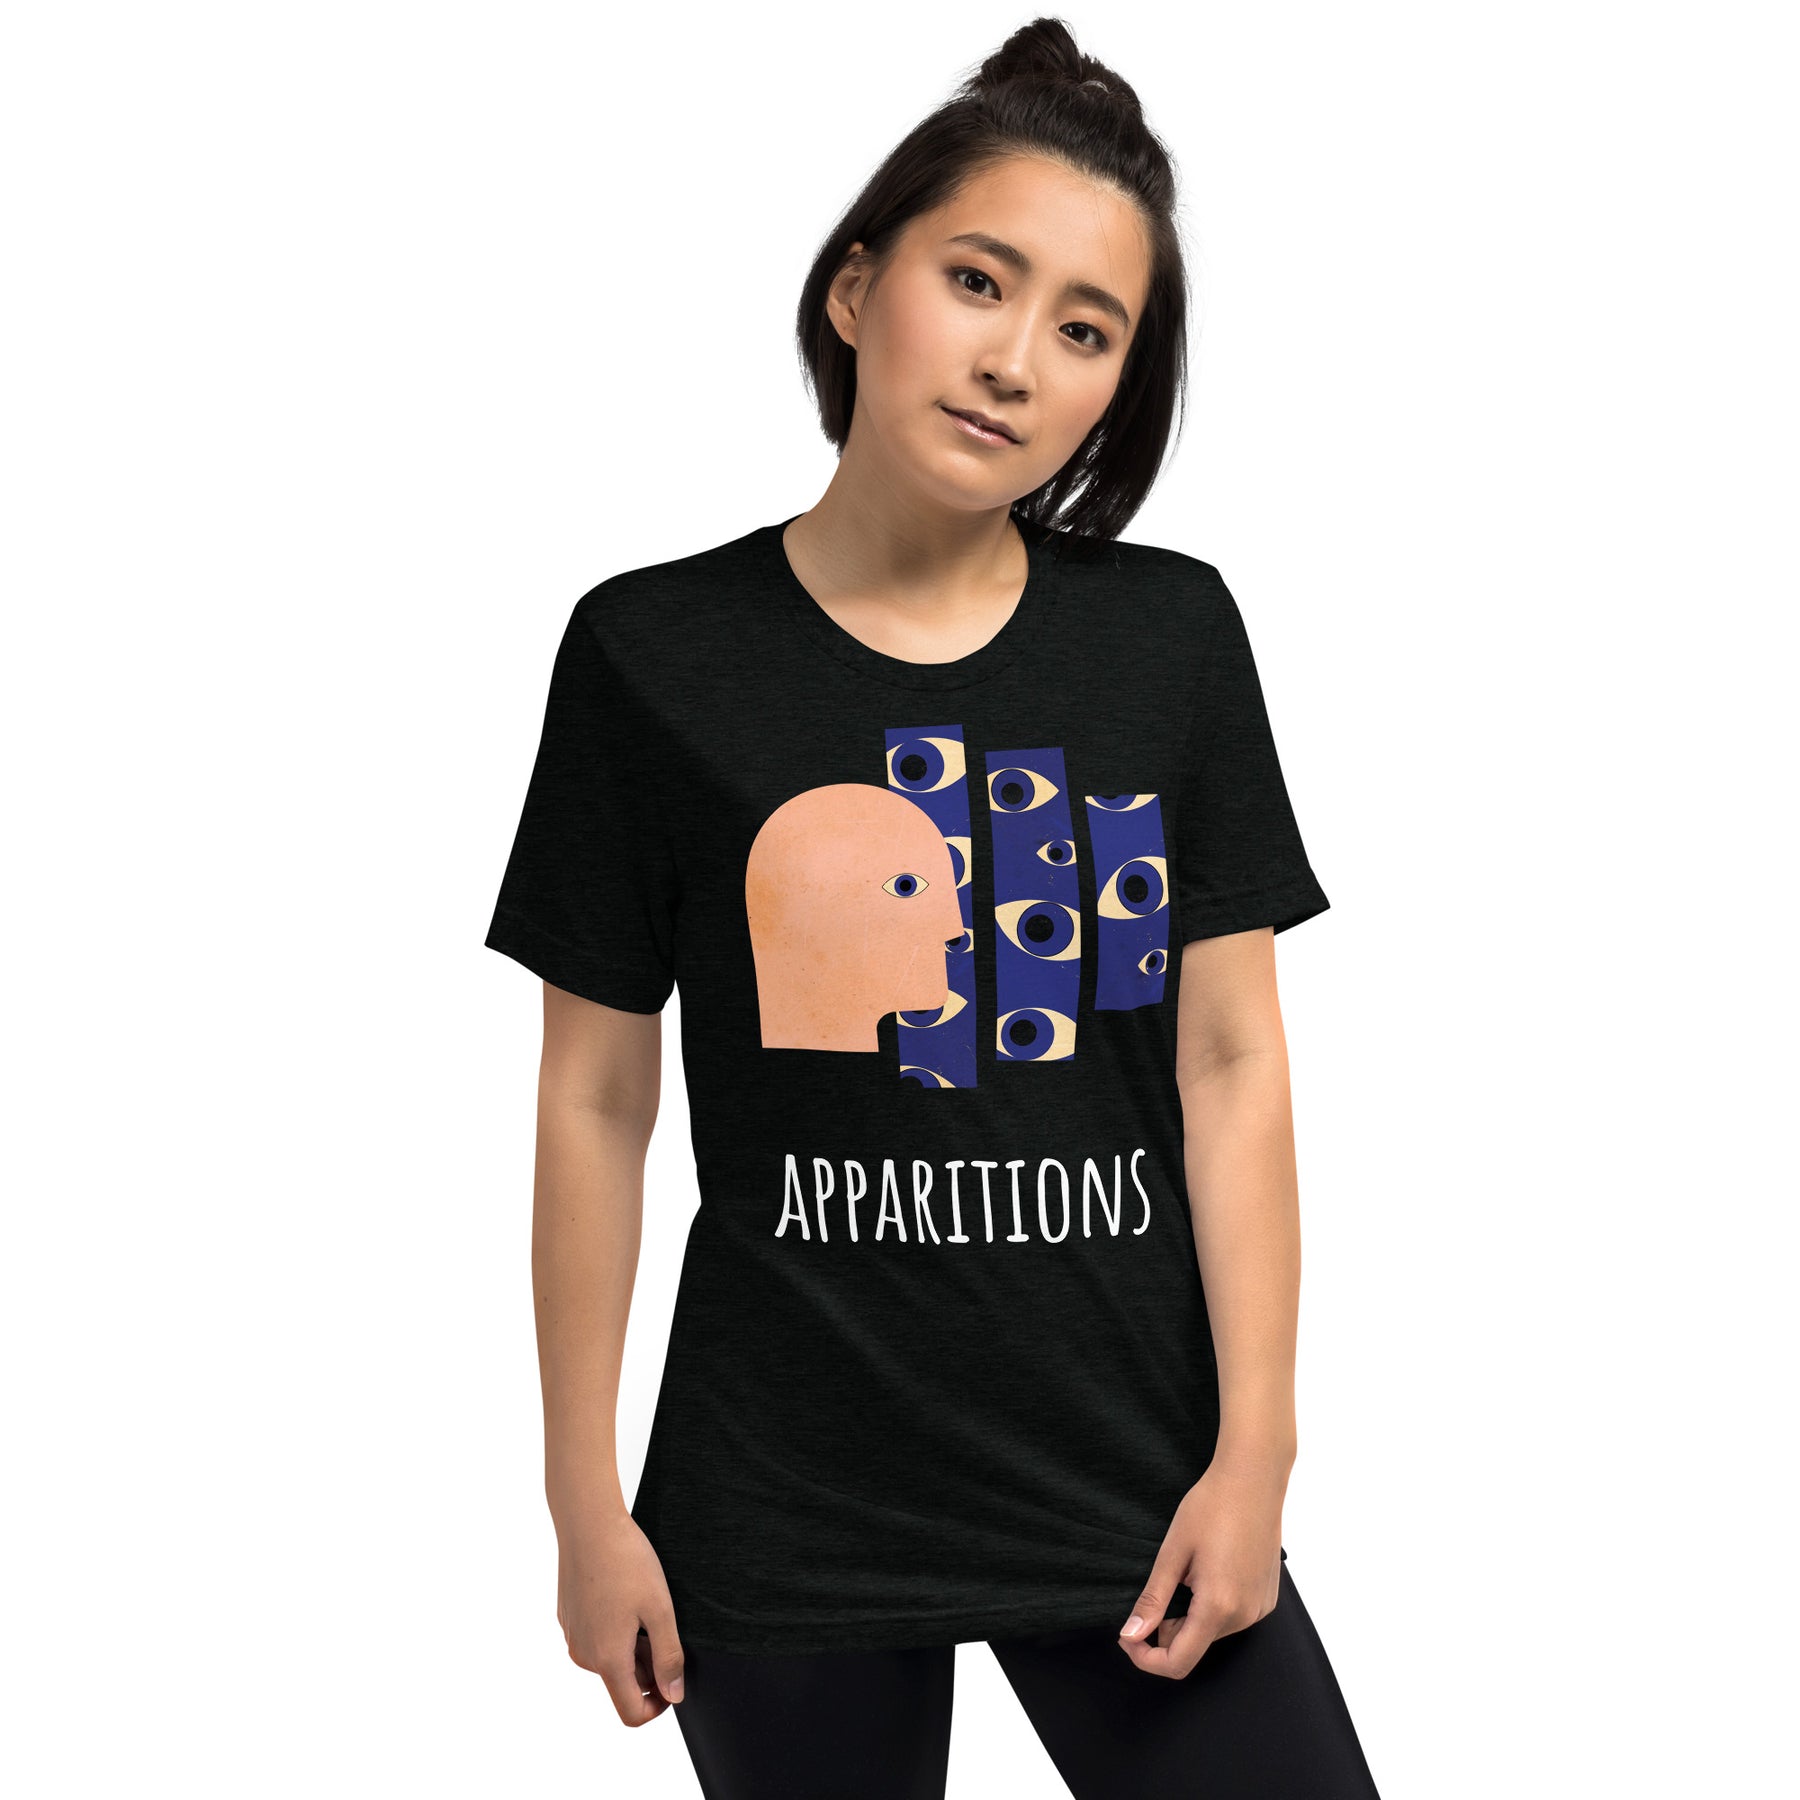 "Apparitions" Tri-blend T-shirt